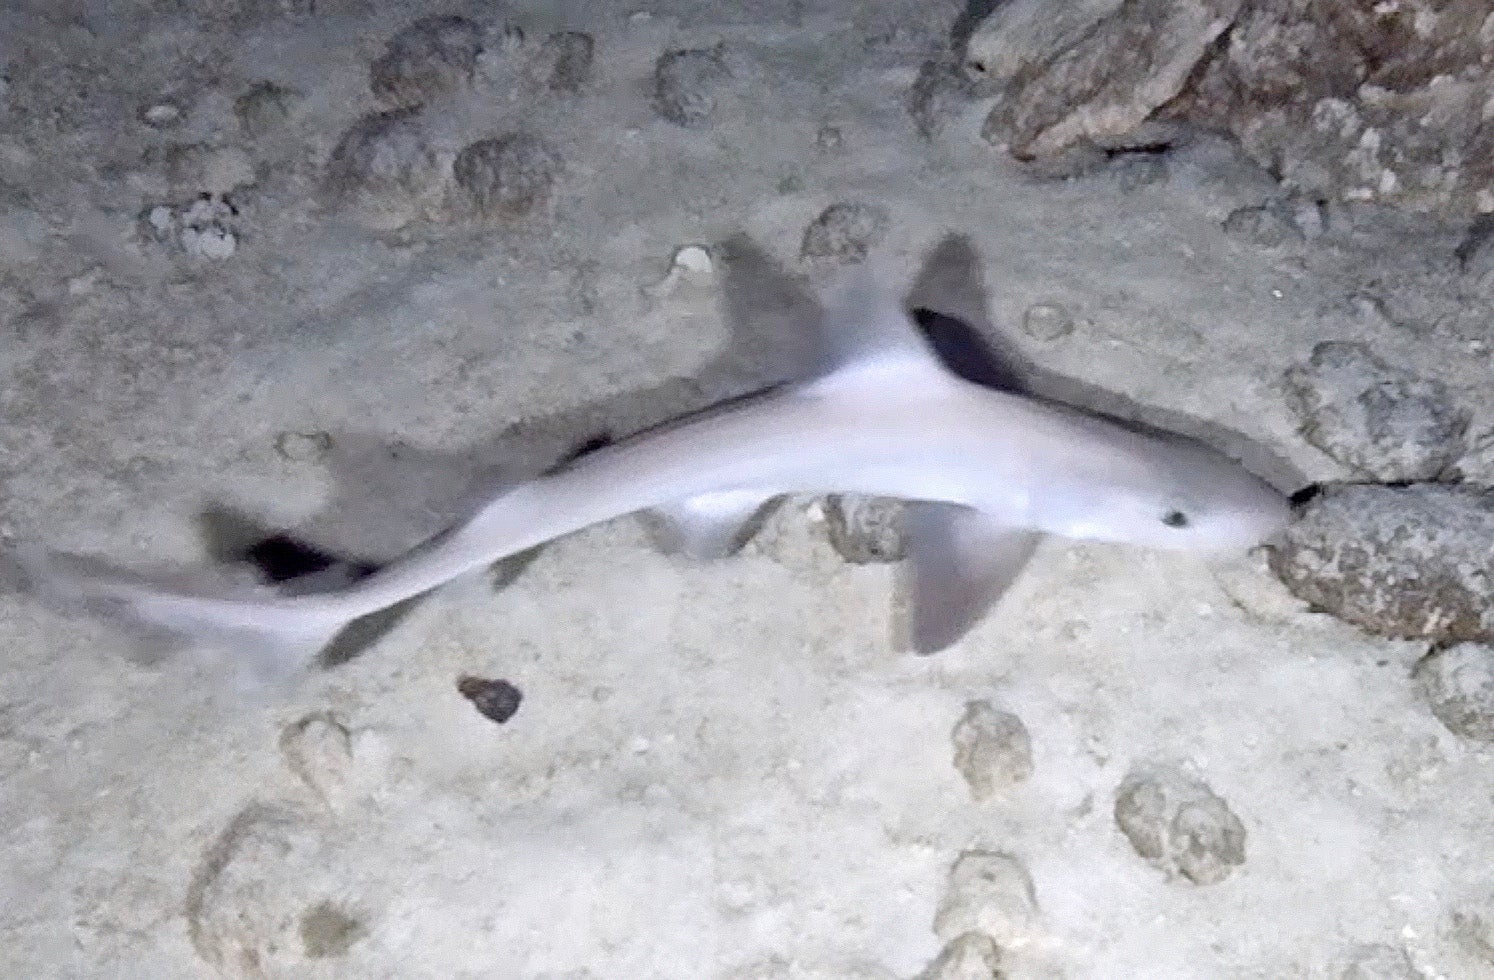 sharpnose sevengill shark